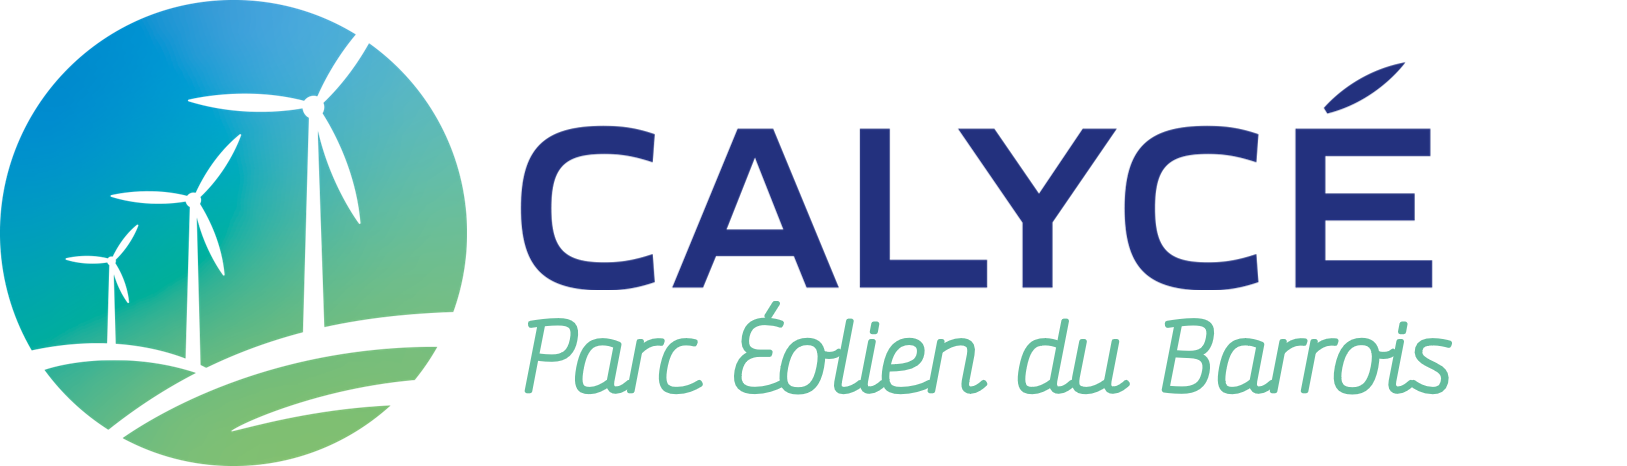 Logo Parc eolien du Barrois - Couleur